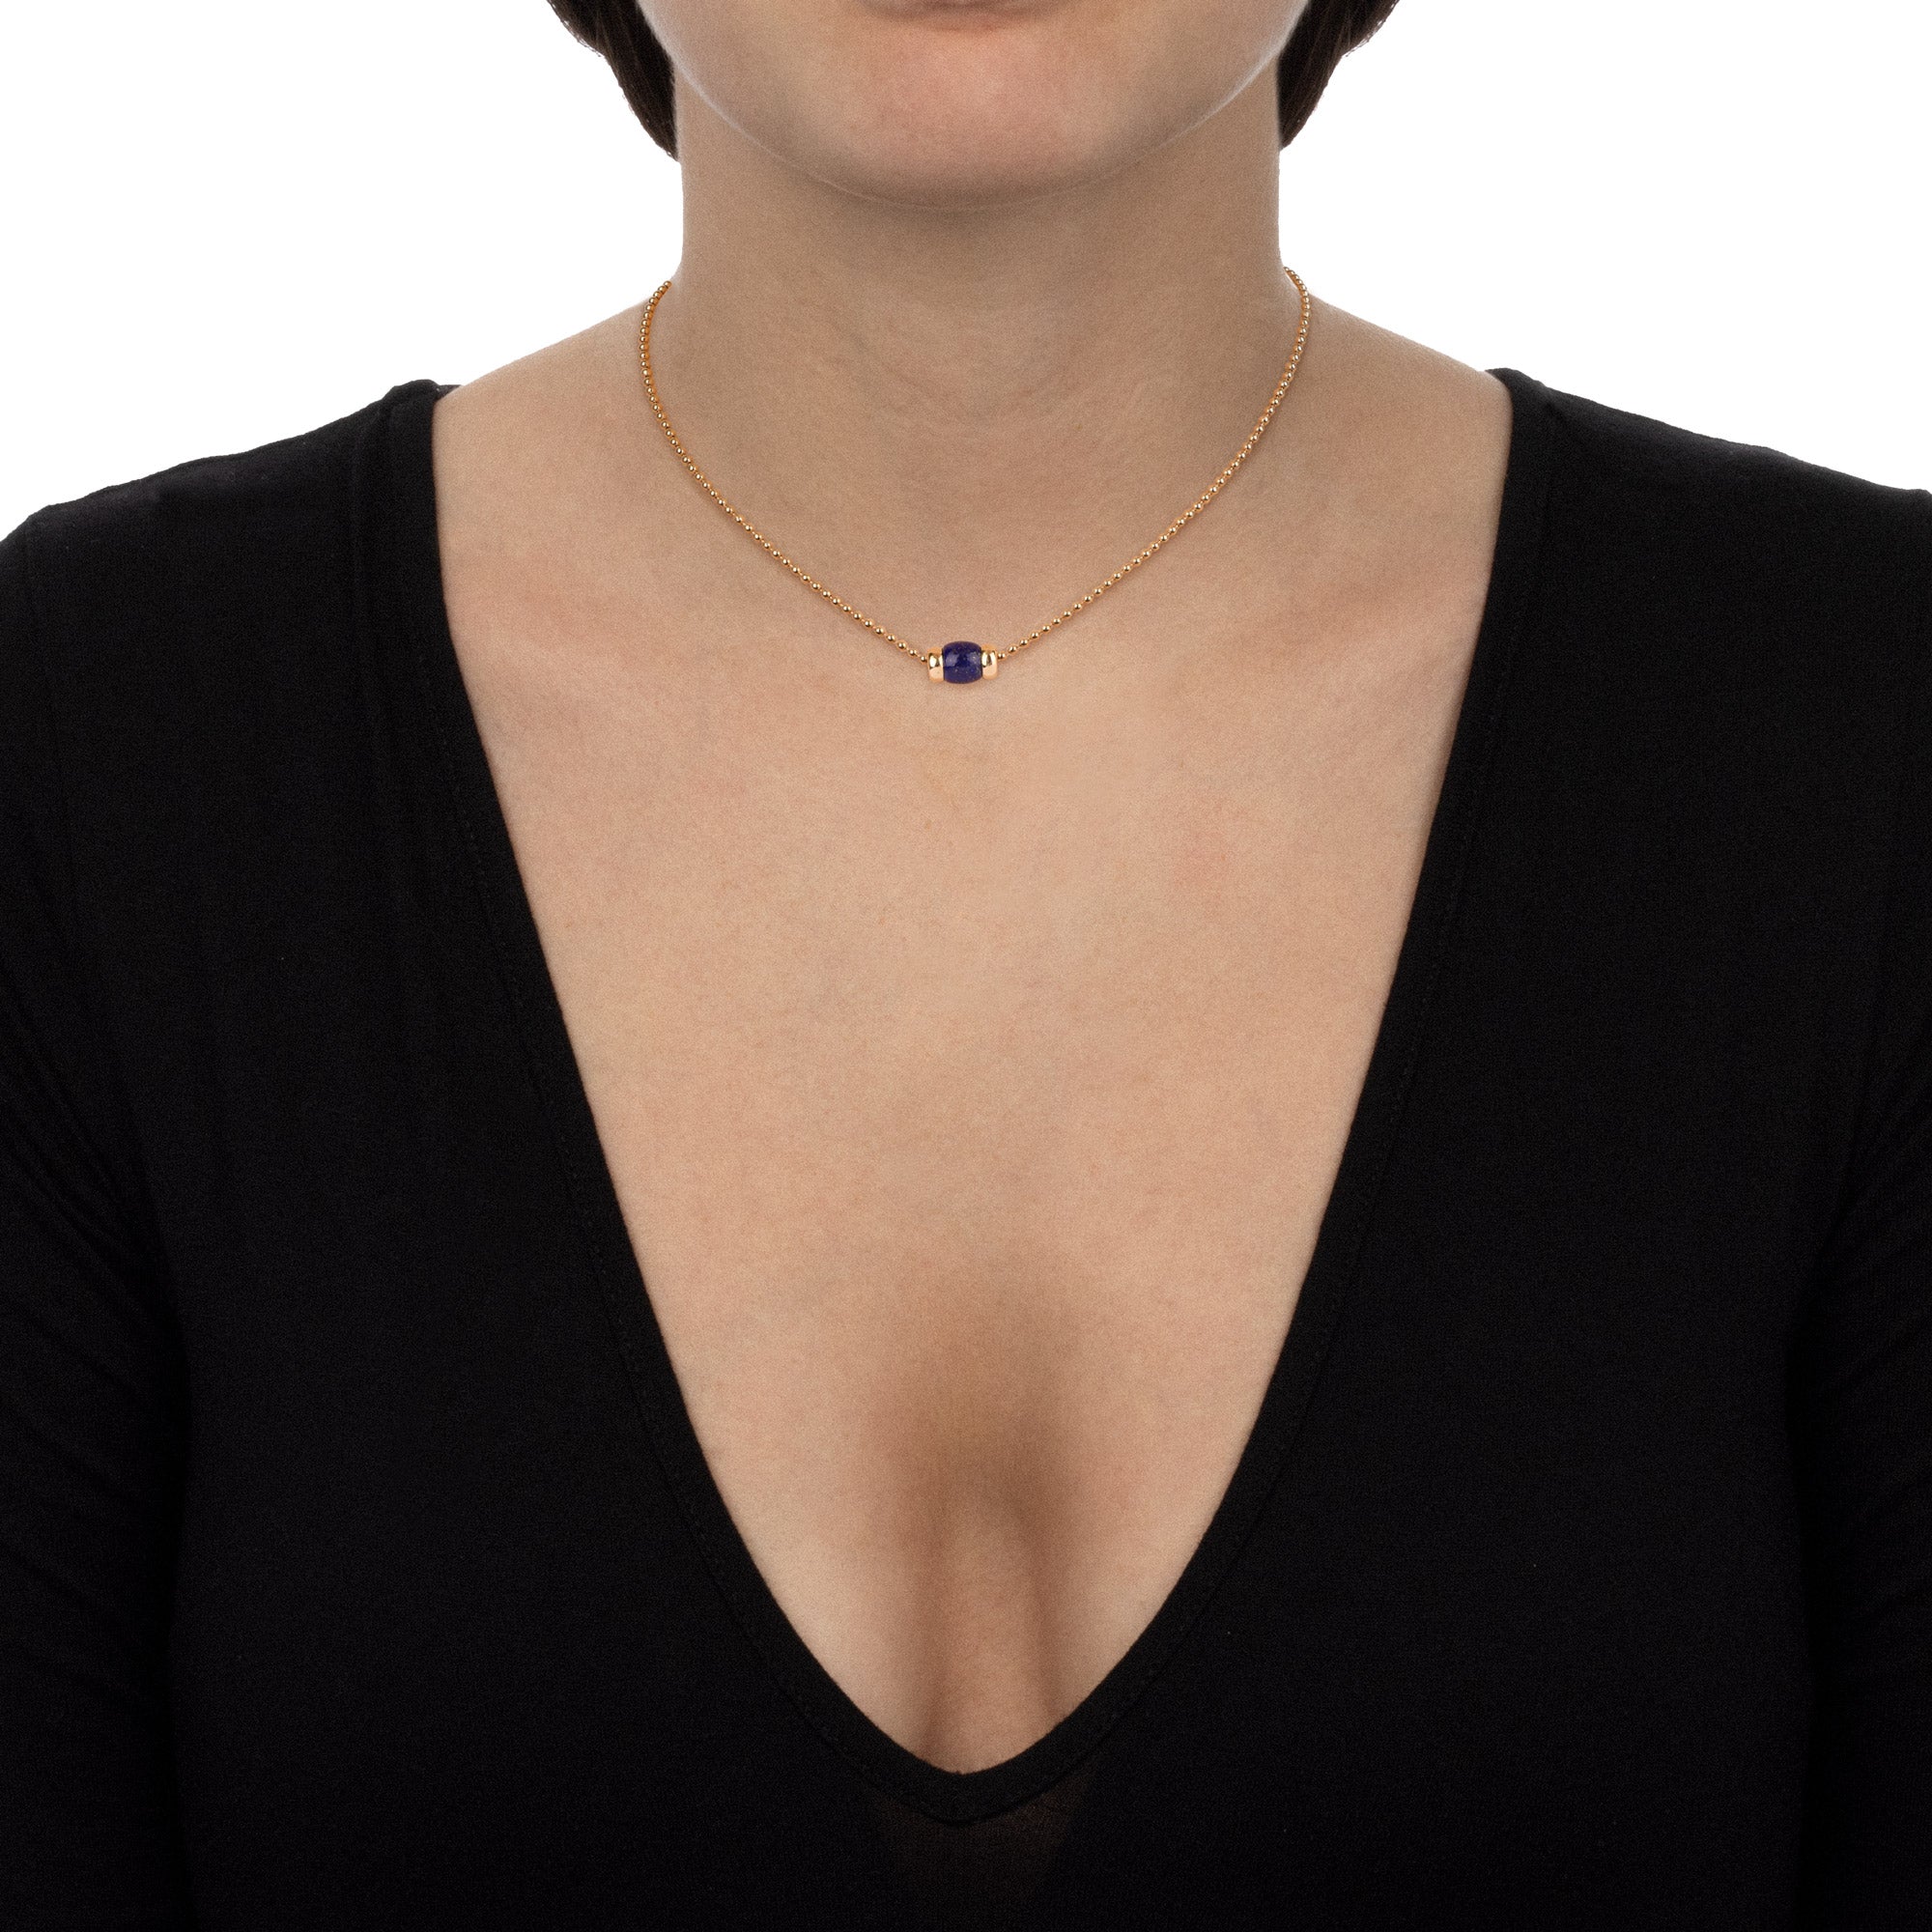 Worn - Le Carrousel Necklace Lapis lazuli